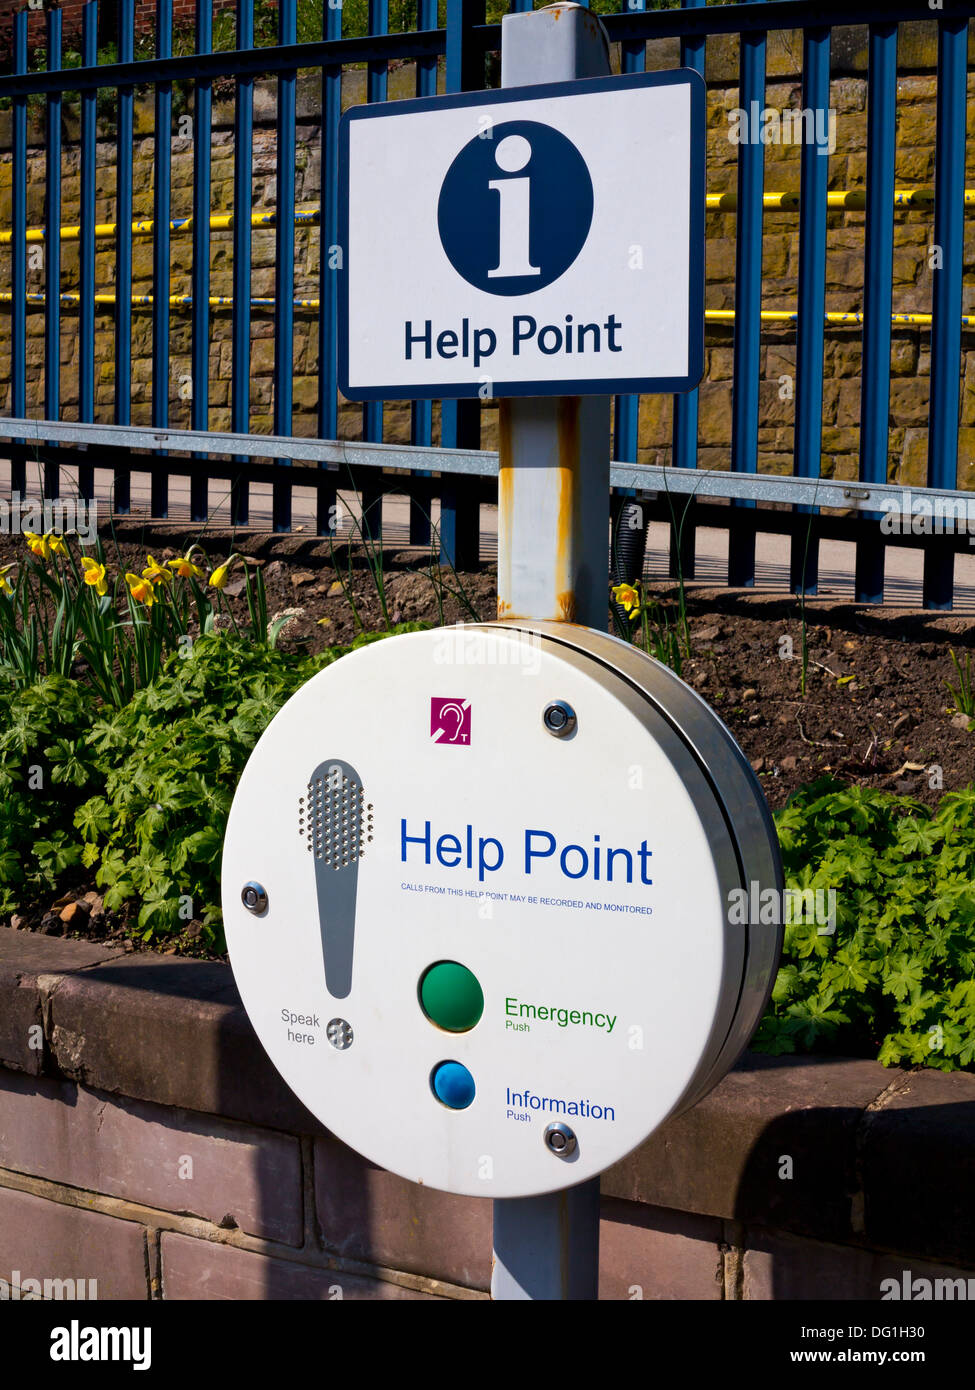 Point d'information et d'aide pour aider les passagers sur les avions de gare à Belper Derbyshire, Angleterre, Royaume-Uni Banque D'Images